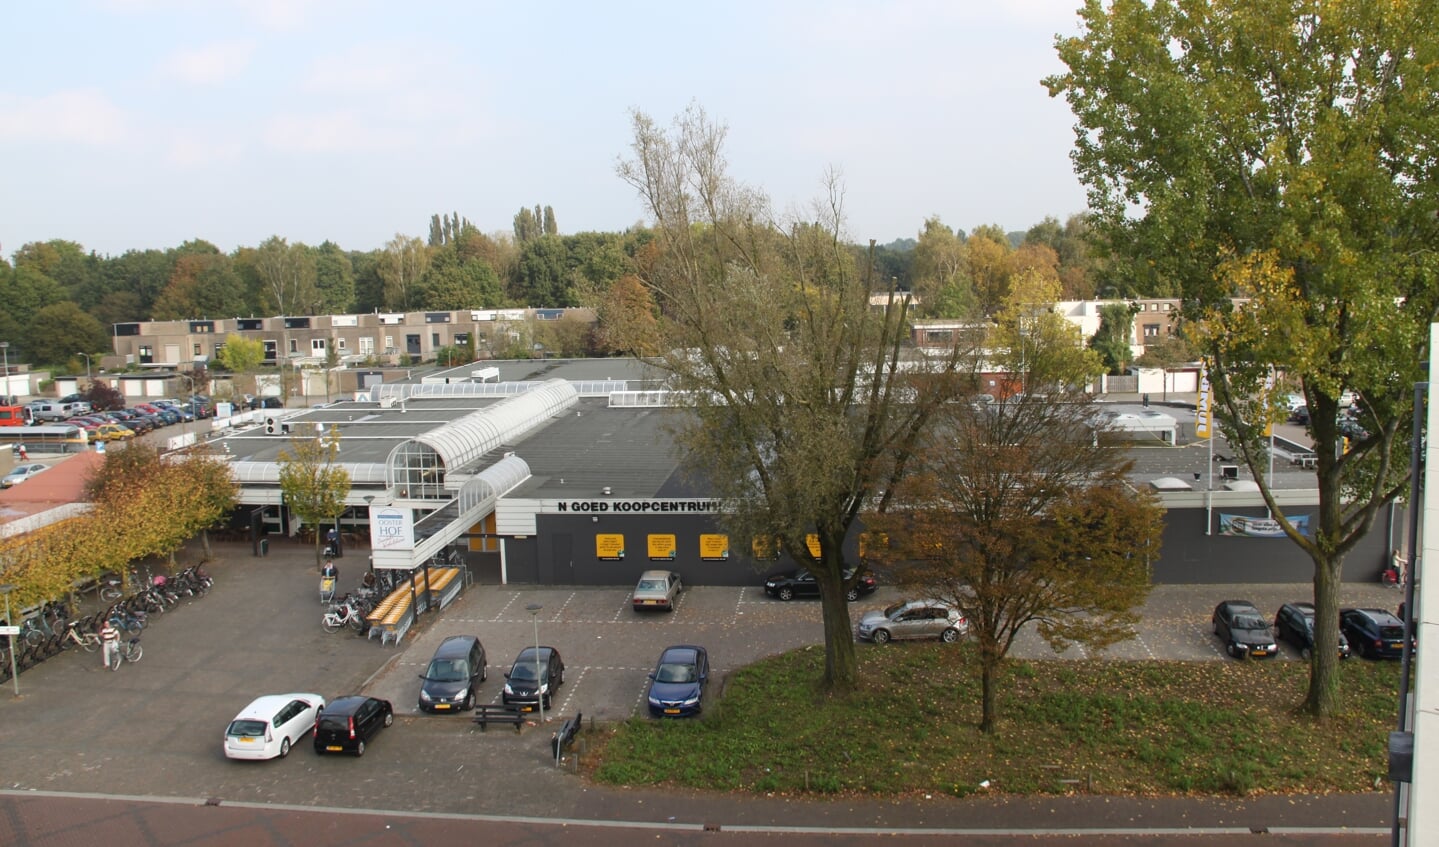 Winkelcentrum Oosterhof vanuit Princenlant gezien.